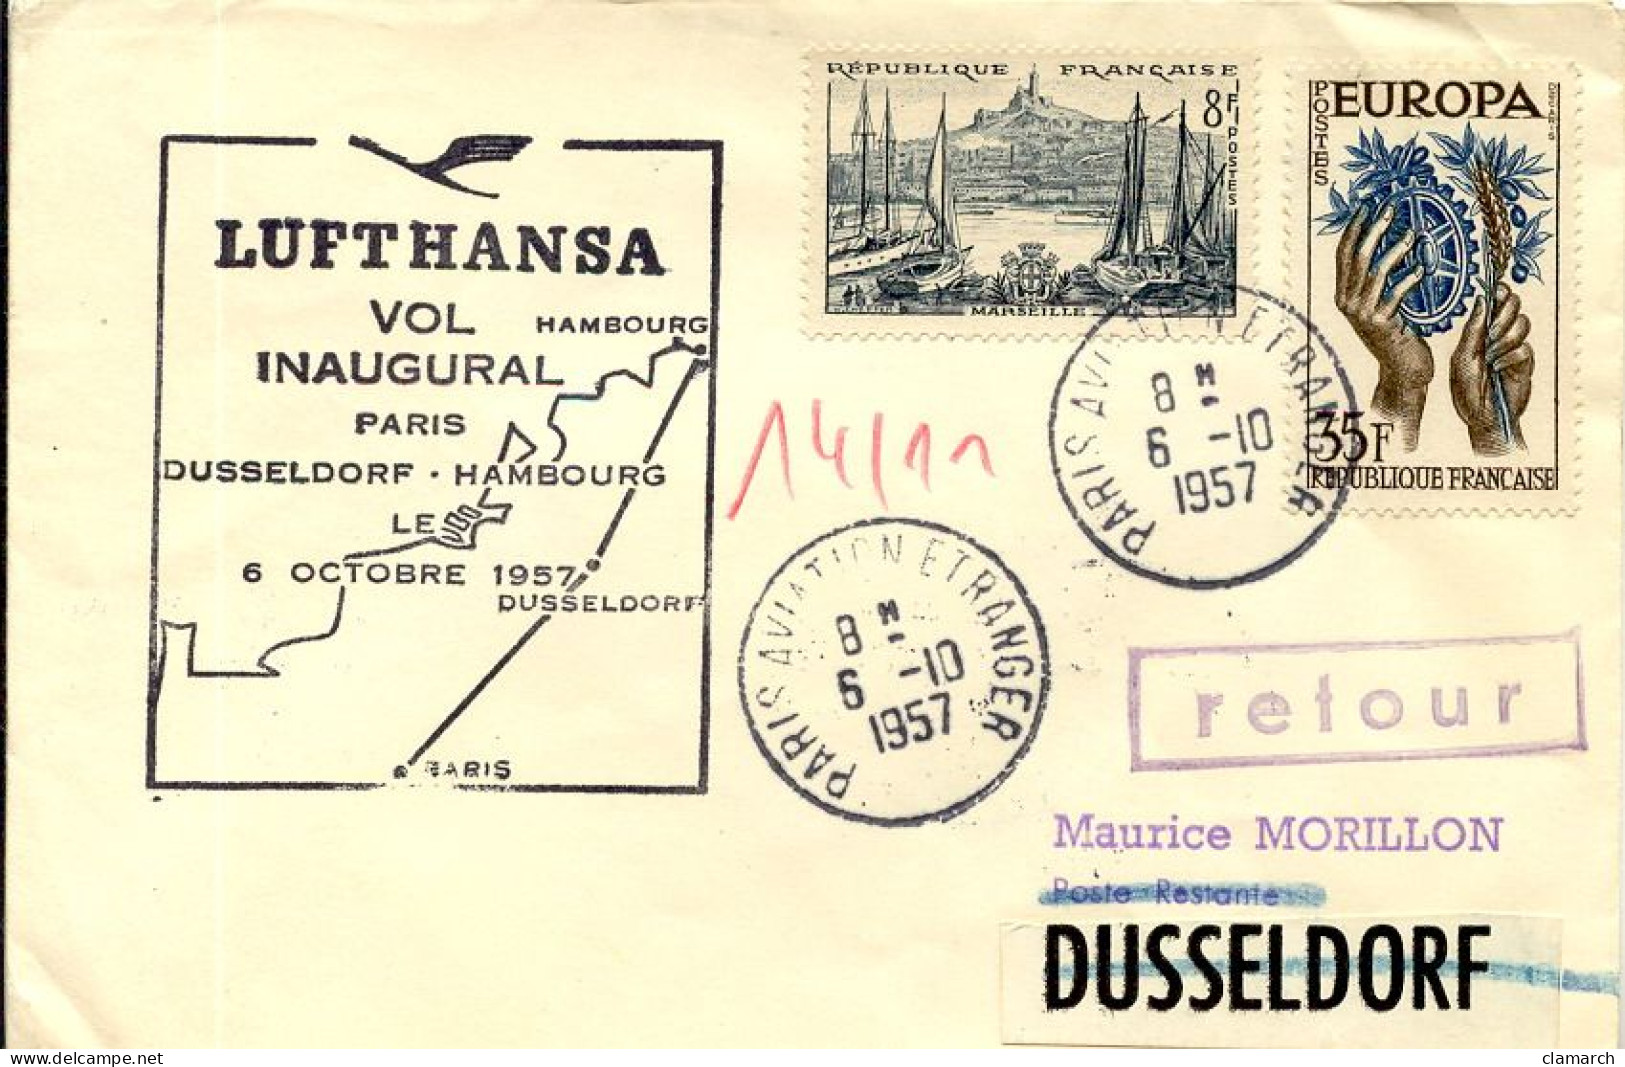 Aérophilatélie-Vol Inaugural PARIS-DUSSELDORF-HAMBOURG Par Lufthansa 6Oct 1957-cachet De Paris Du 6.10.57 - First Flight Covers